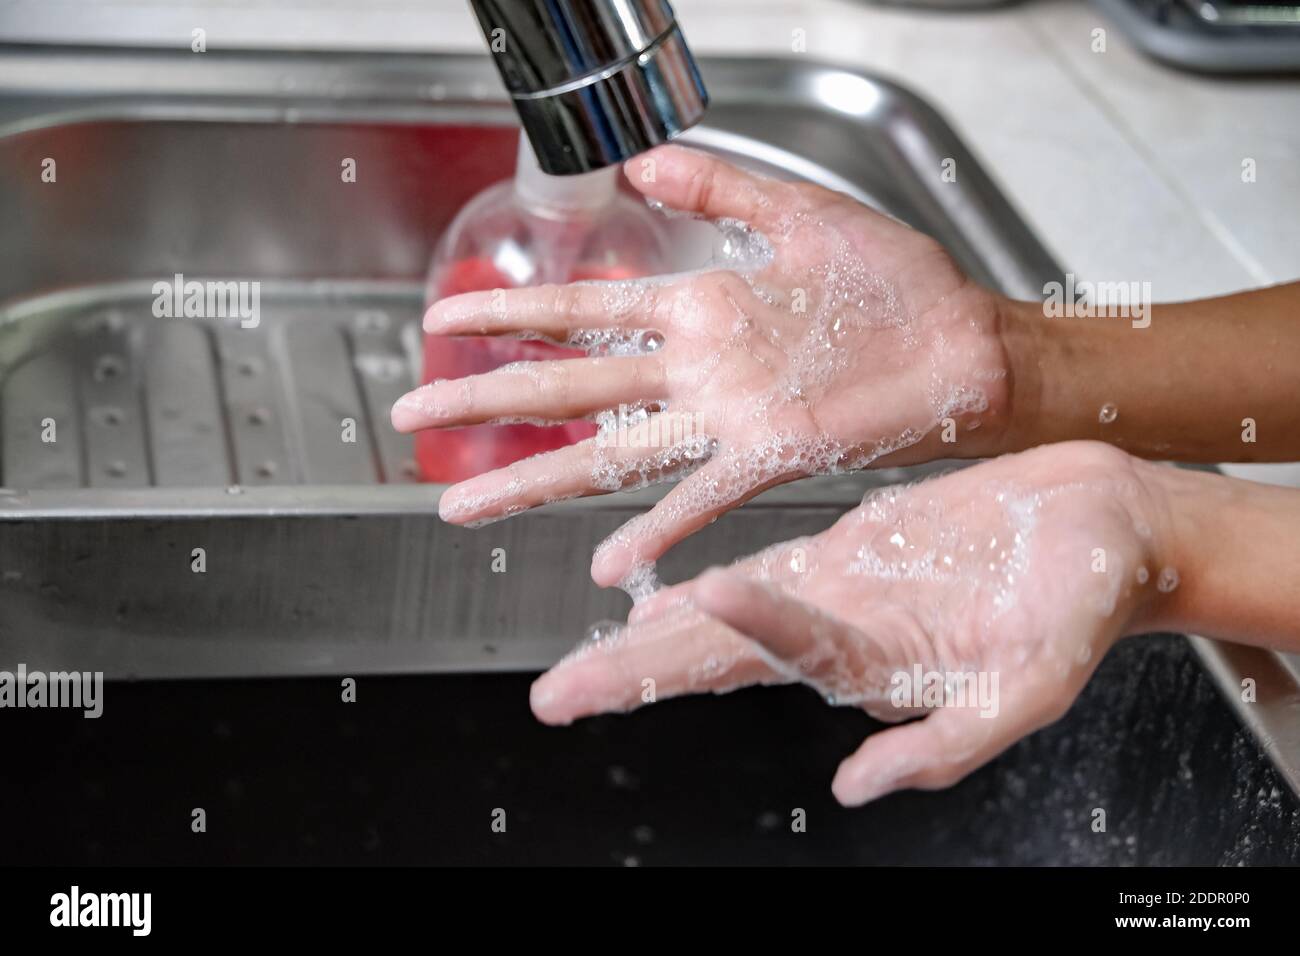 Nahaufnahme Bild der Hände gewaschen mit Seife unter Wasser Dusche auf einem Spülbecken, um Hygiene und Gesundheit zu gewährleisten. Gesunder Lebensstil Stockfoto